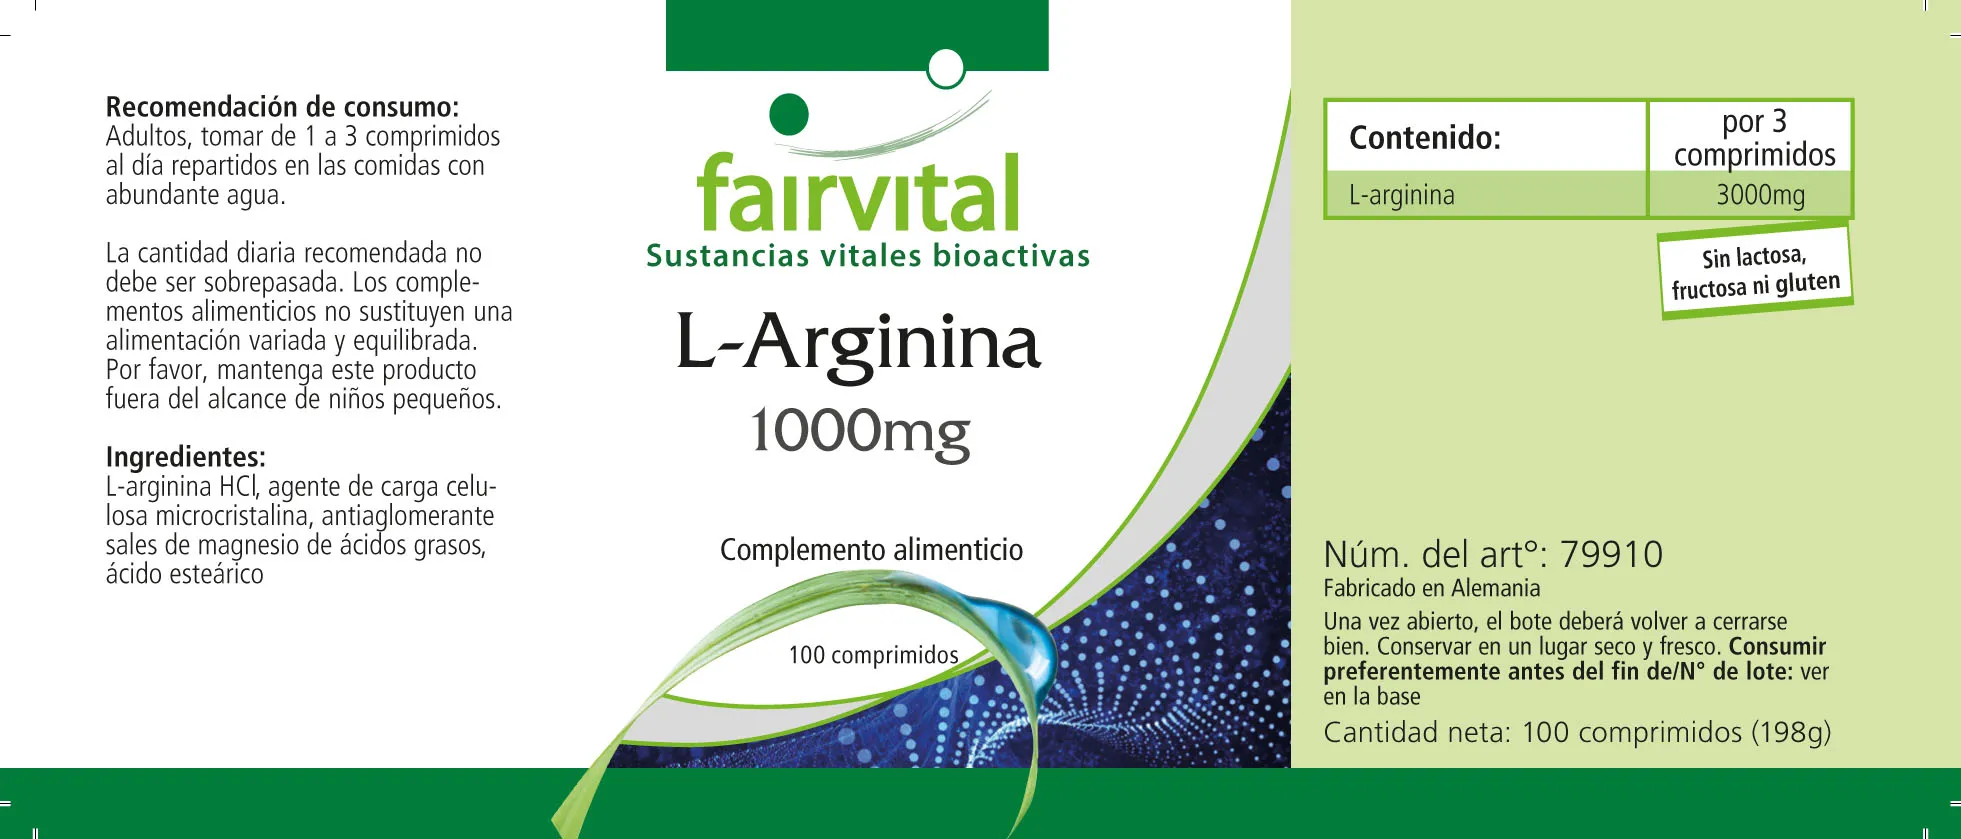 L-Arginina 1000mg - 100 Comprimidos